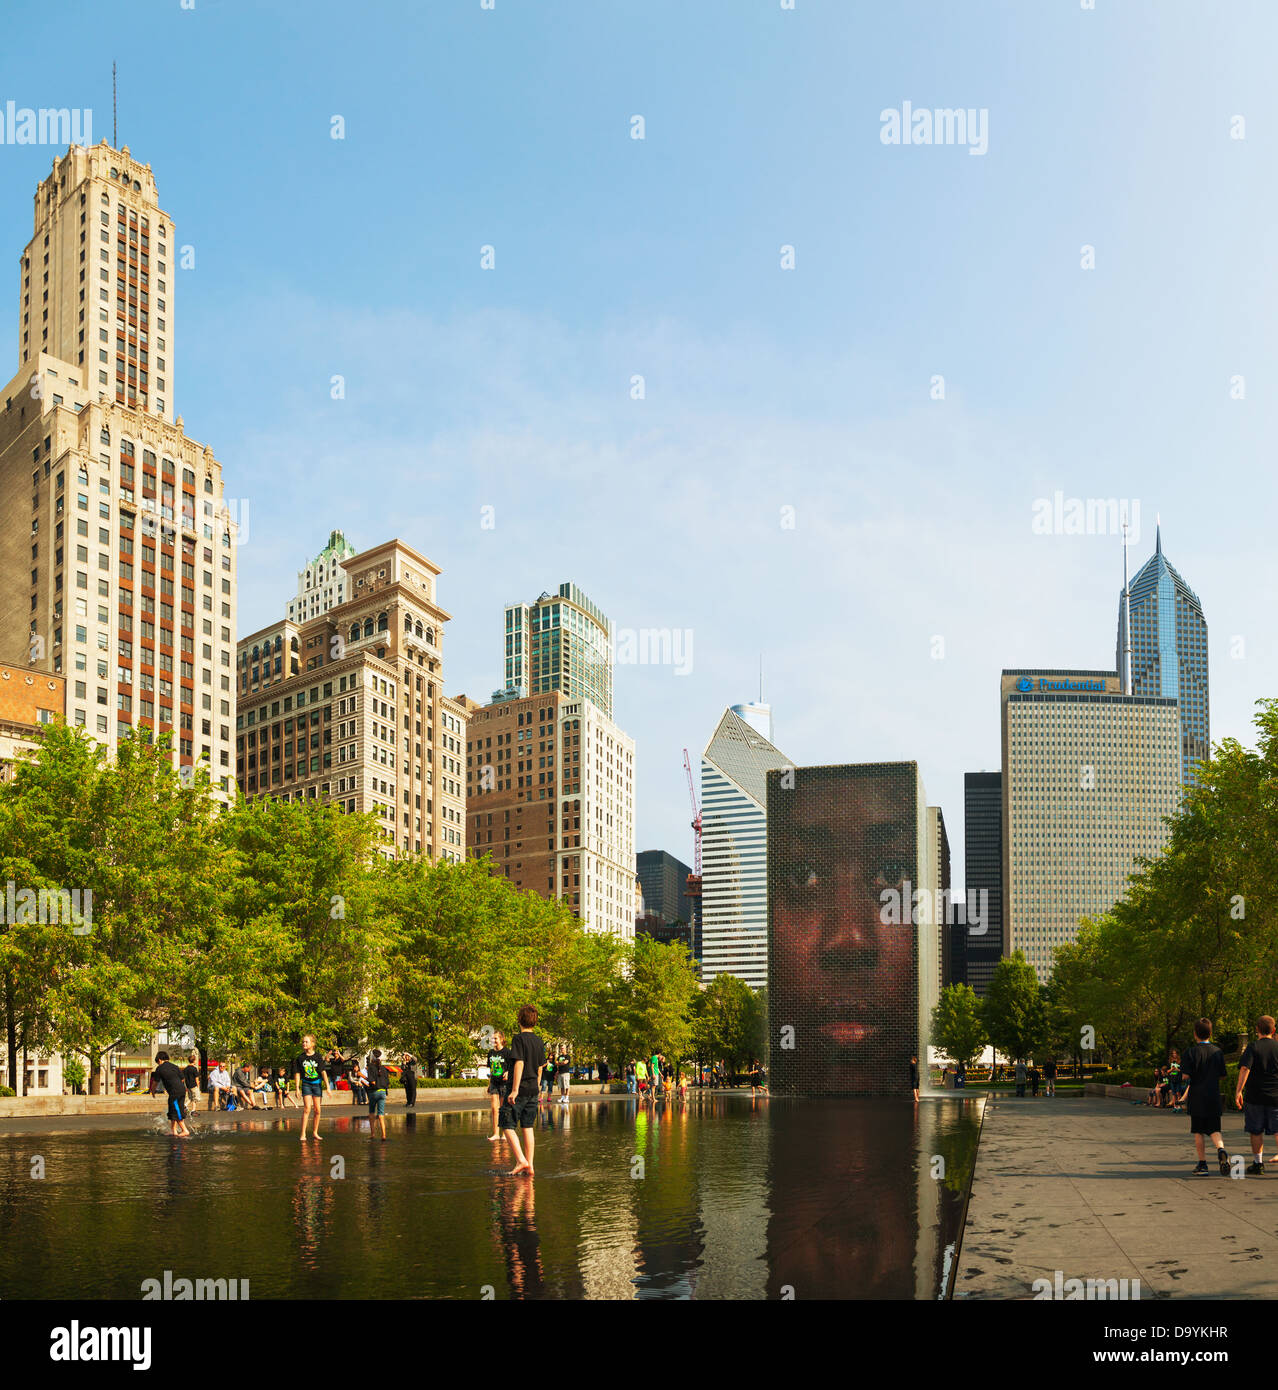 La città di Chicago con fontana a corona Foto Stock